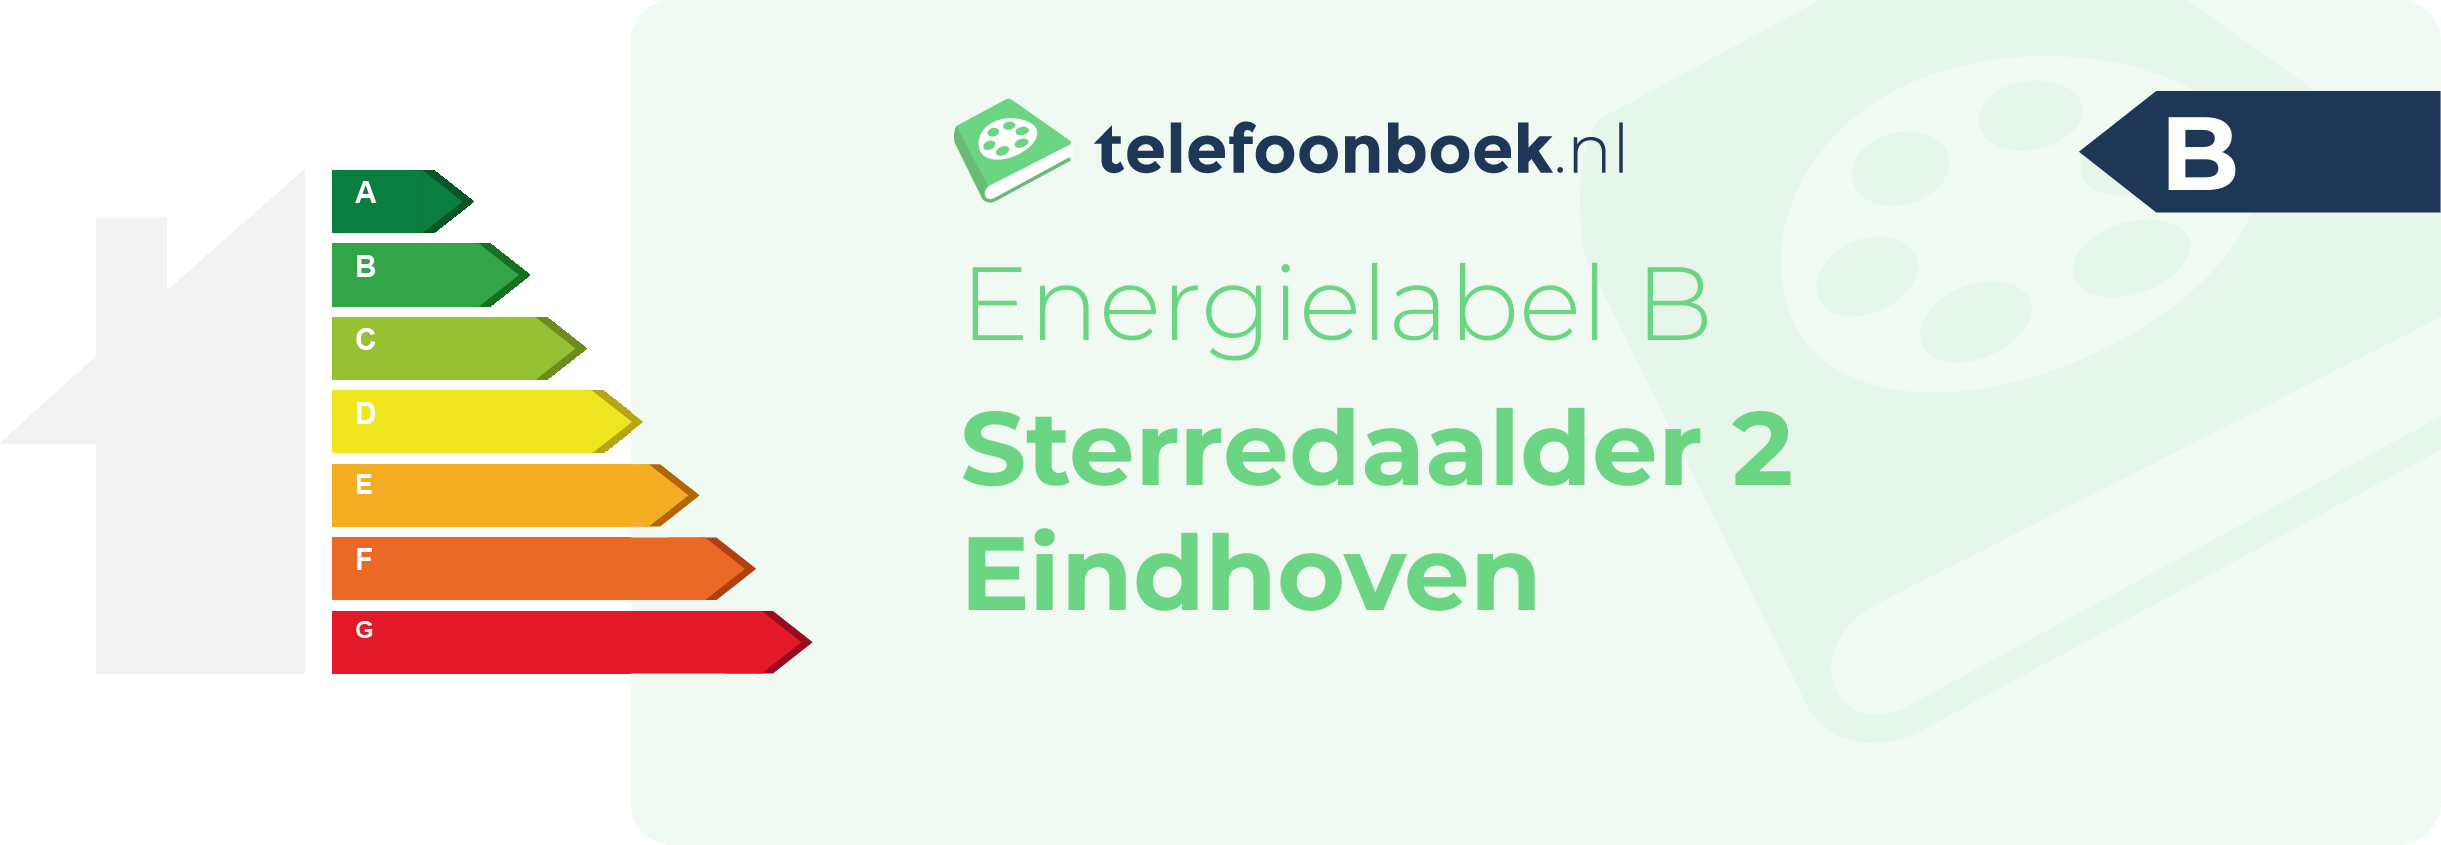 Energielabel Sterredaalder 2 Eindhoven